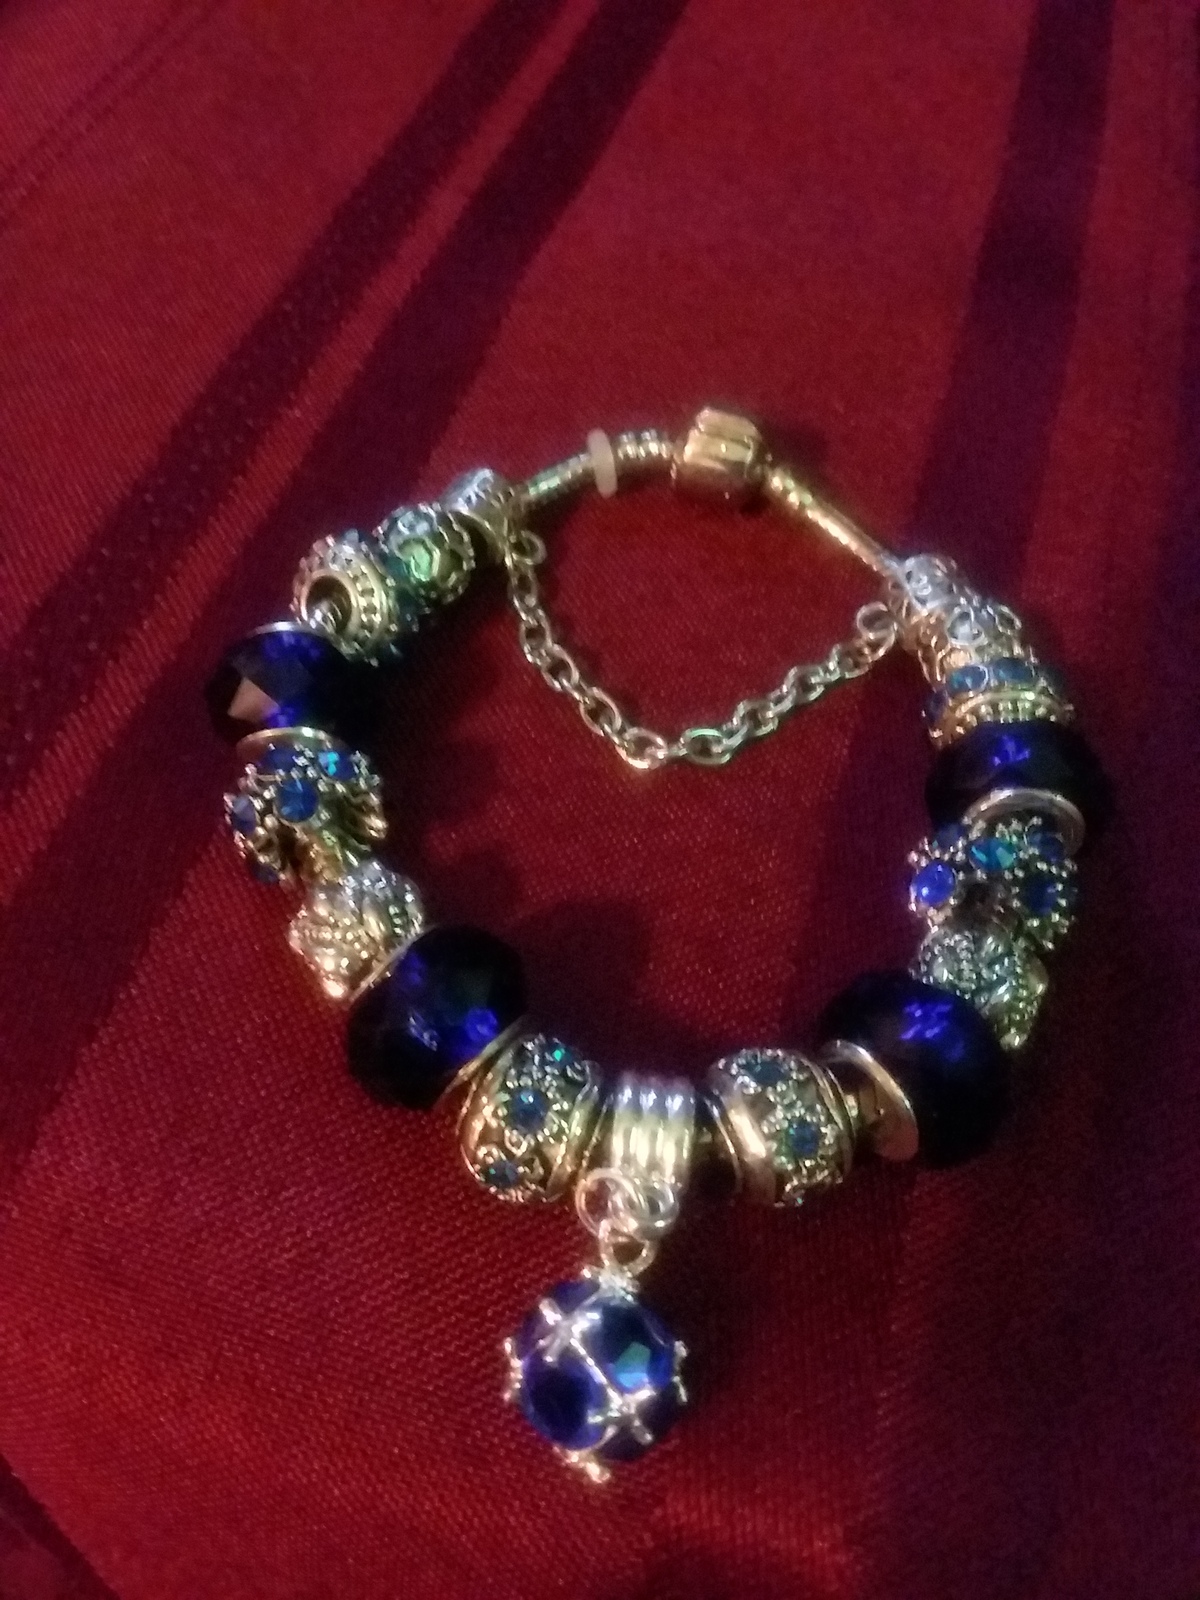 Charm Bracelets - $55.00